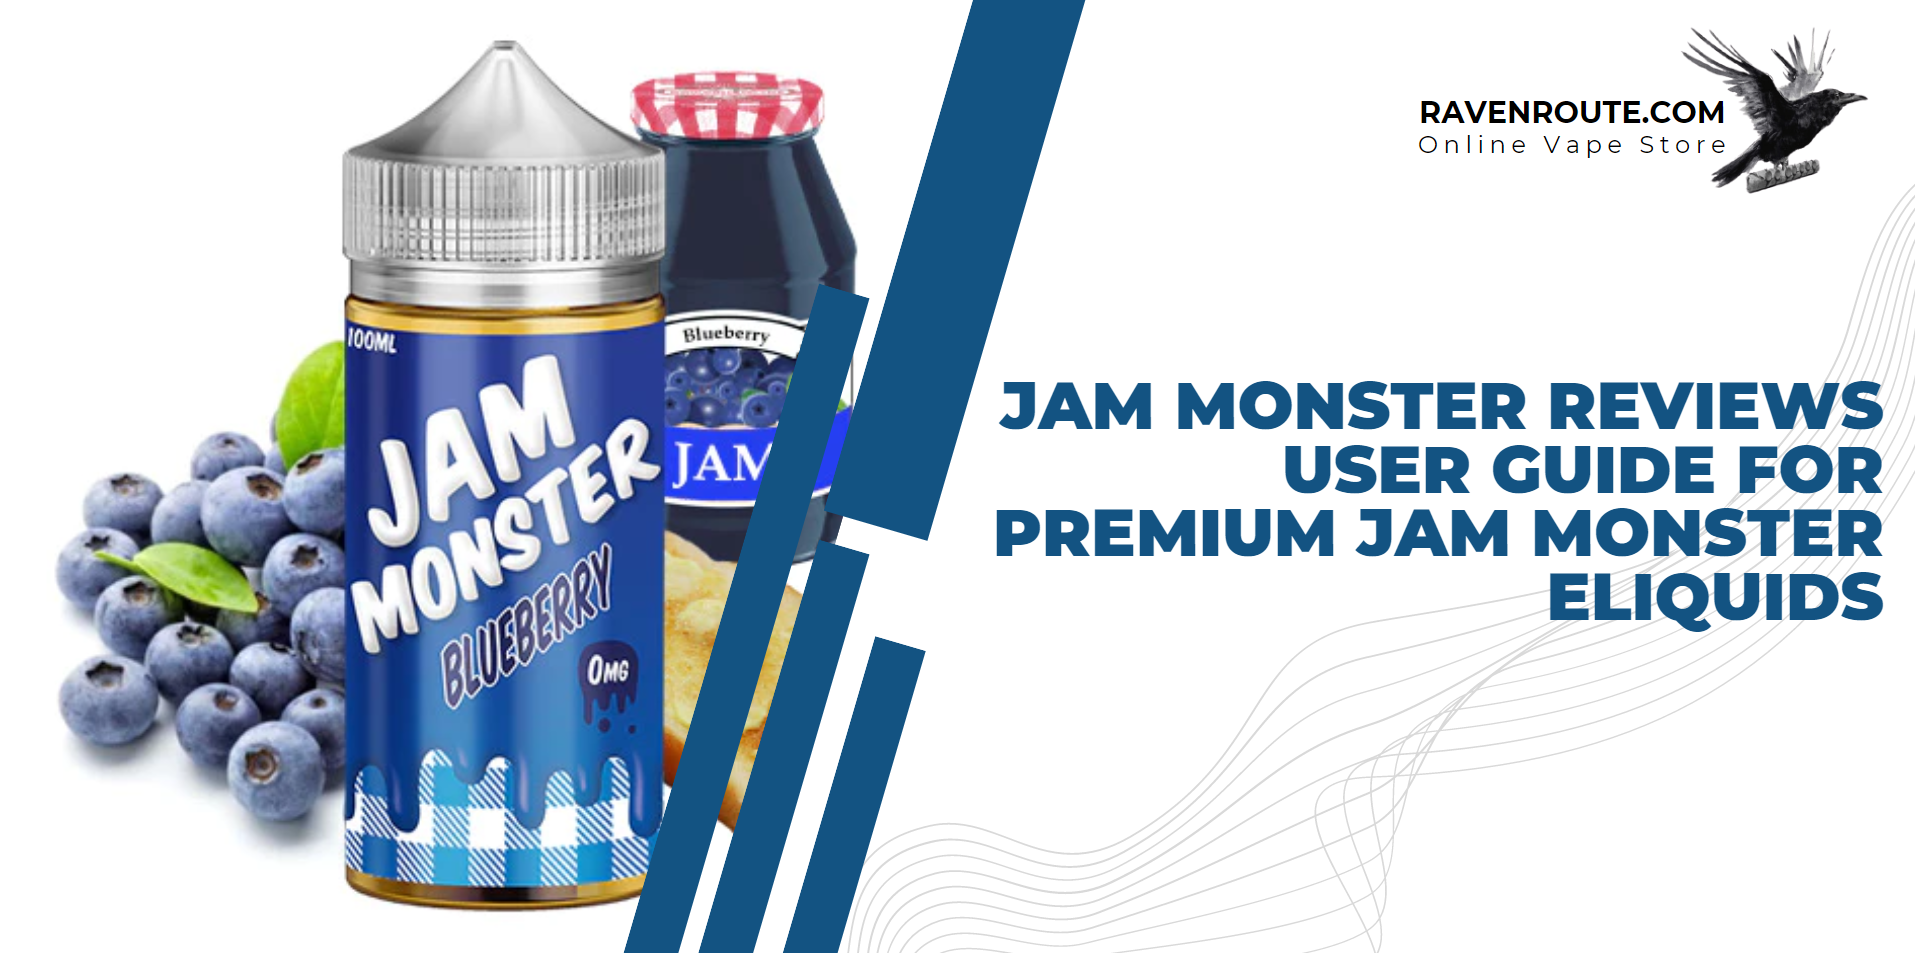 Jam Monster Ejuice Reviews - Premium Jam Monster E-Liquids User Guide